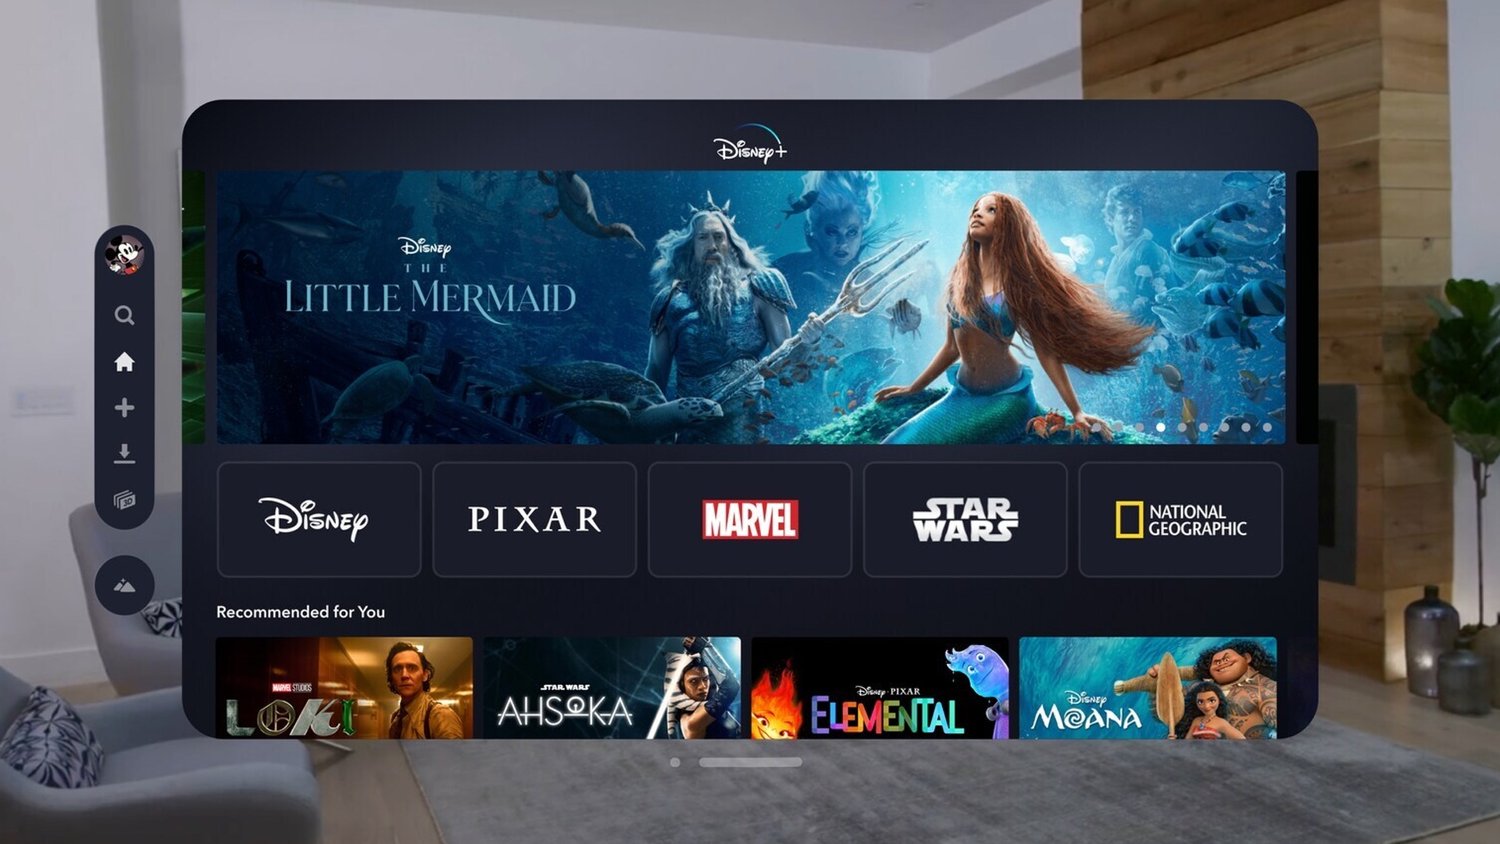 Vision Pro d'Apple propose un voyage cinématographique dans les mondes de Disney, Star Wars, Pixar et Marvel